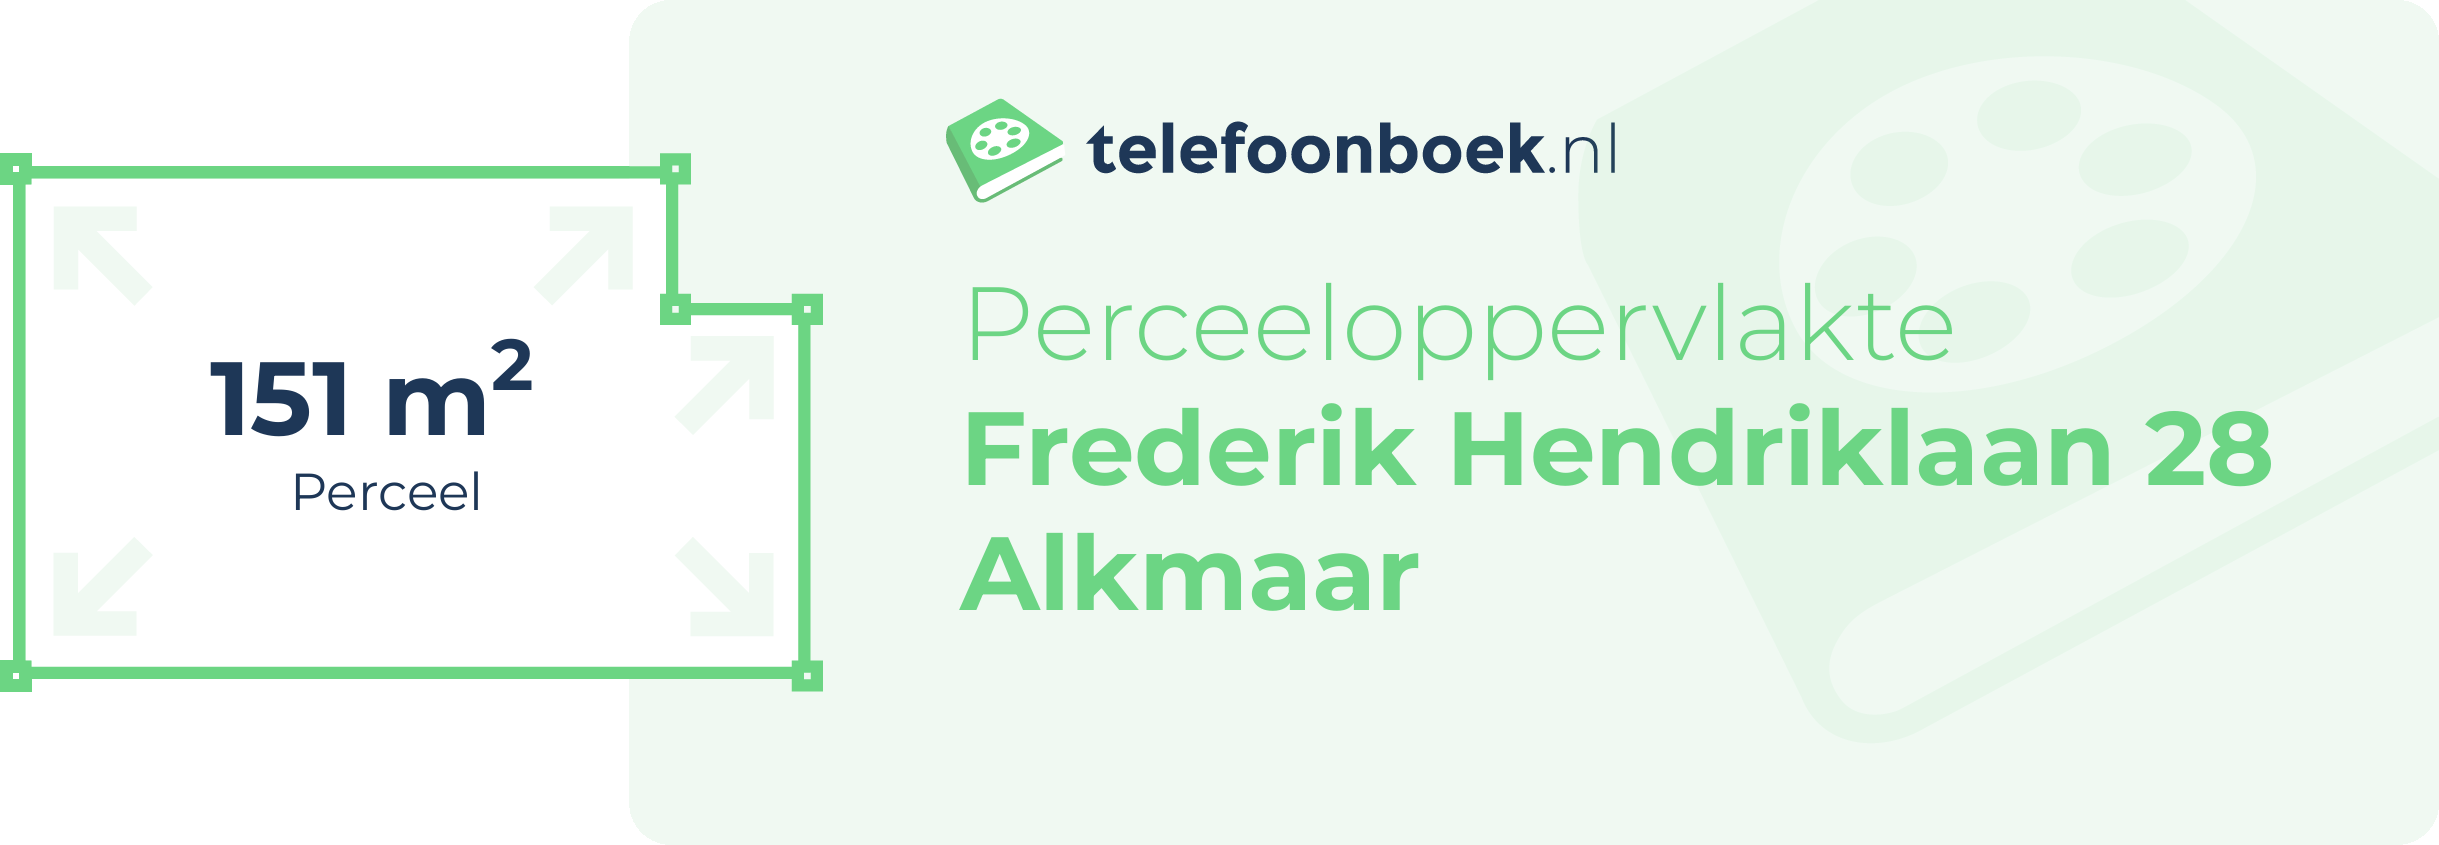 Perceeloppervlakte Frederik Hendriklaan 28 Alkmaar